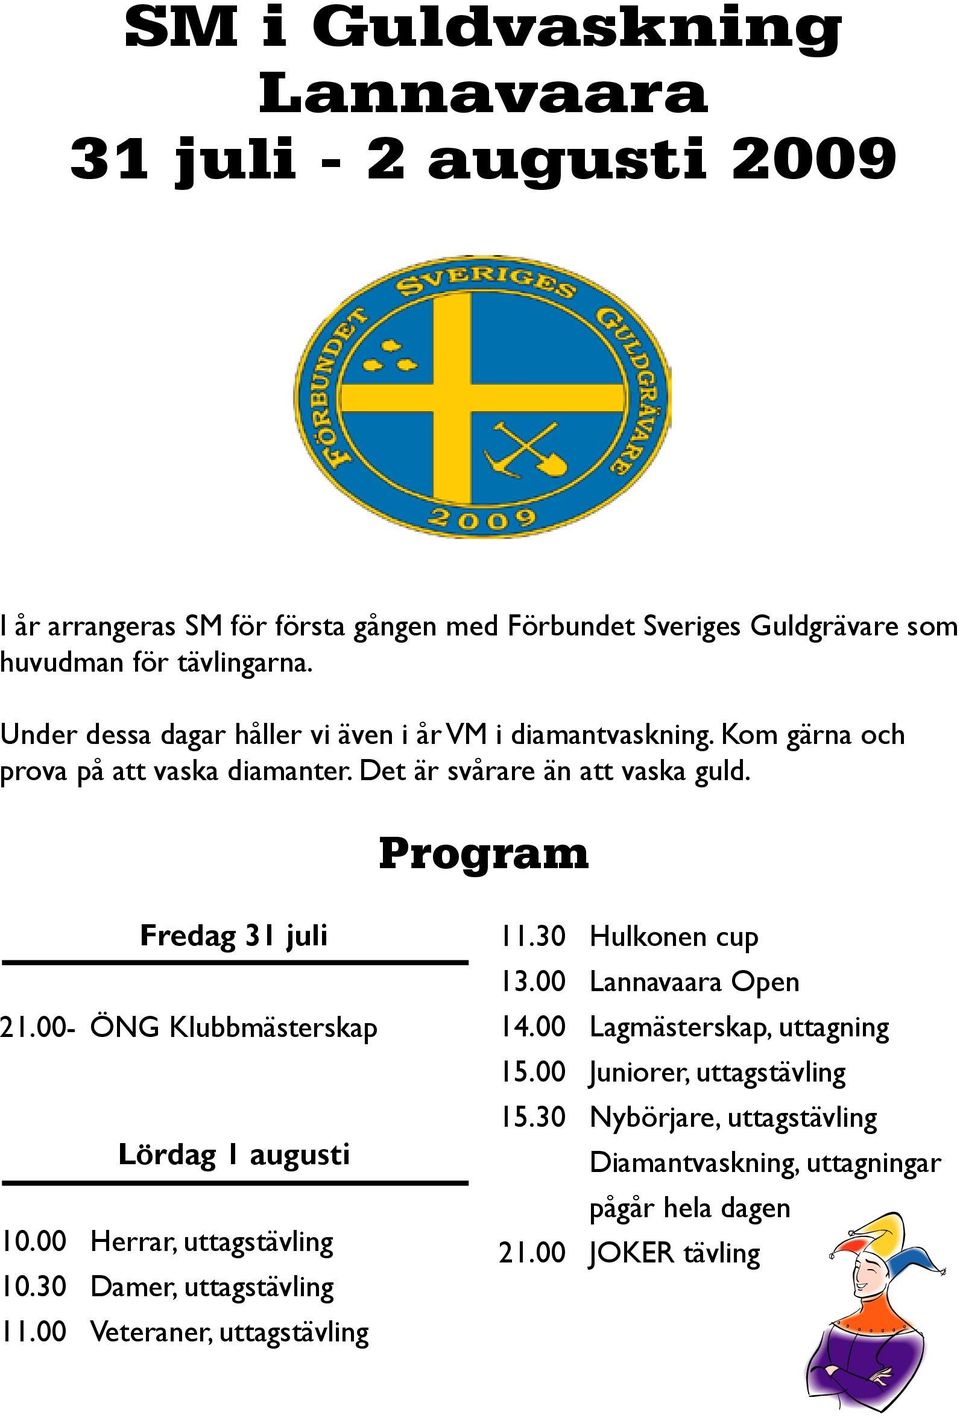 Program Fredag 31 juli 21.00- ÖNG Klubbmästerskap Lördag 1 augusti 10.00 Herrar, uttagstävling 10.30 Damer, uttagstävling 11.00 Veteraner, uttagstävling 11.